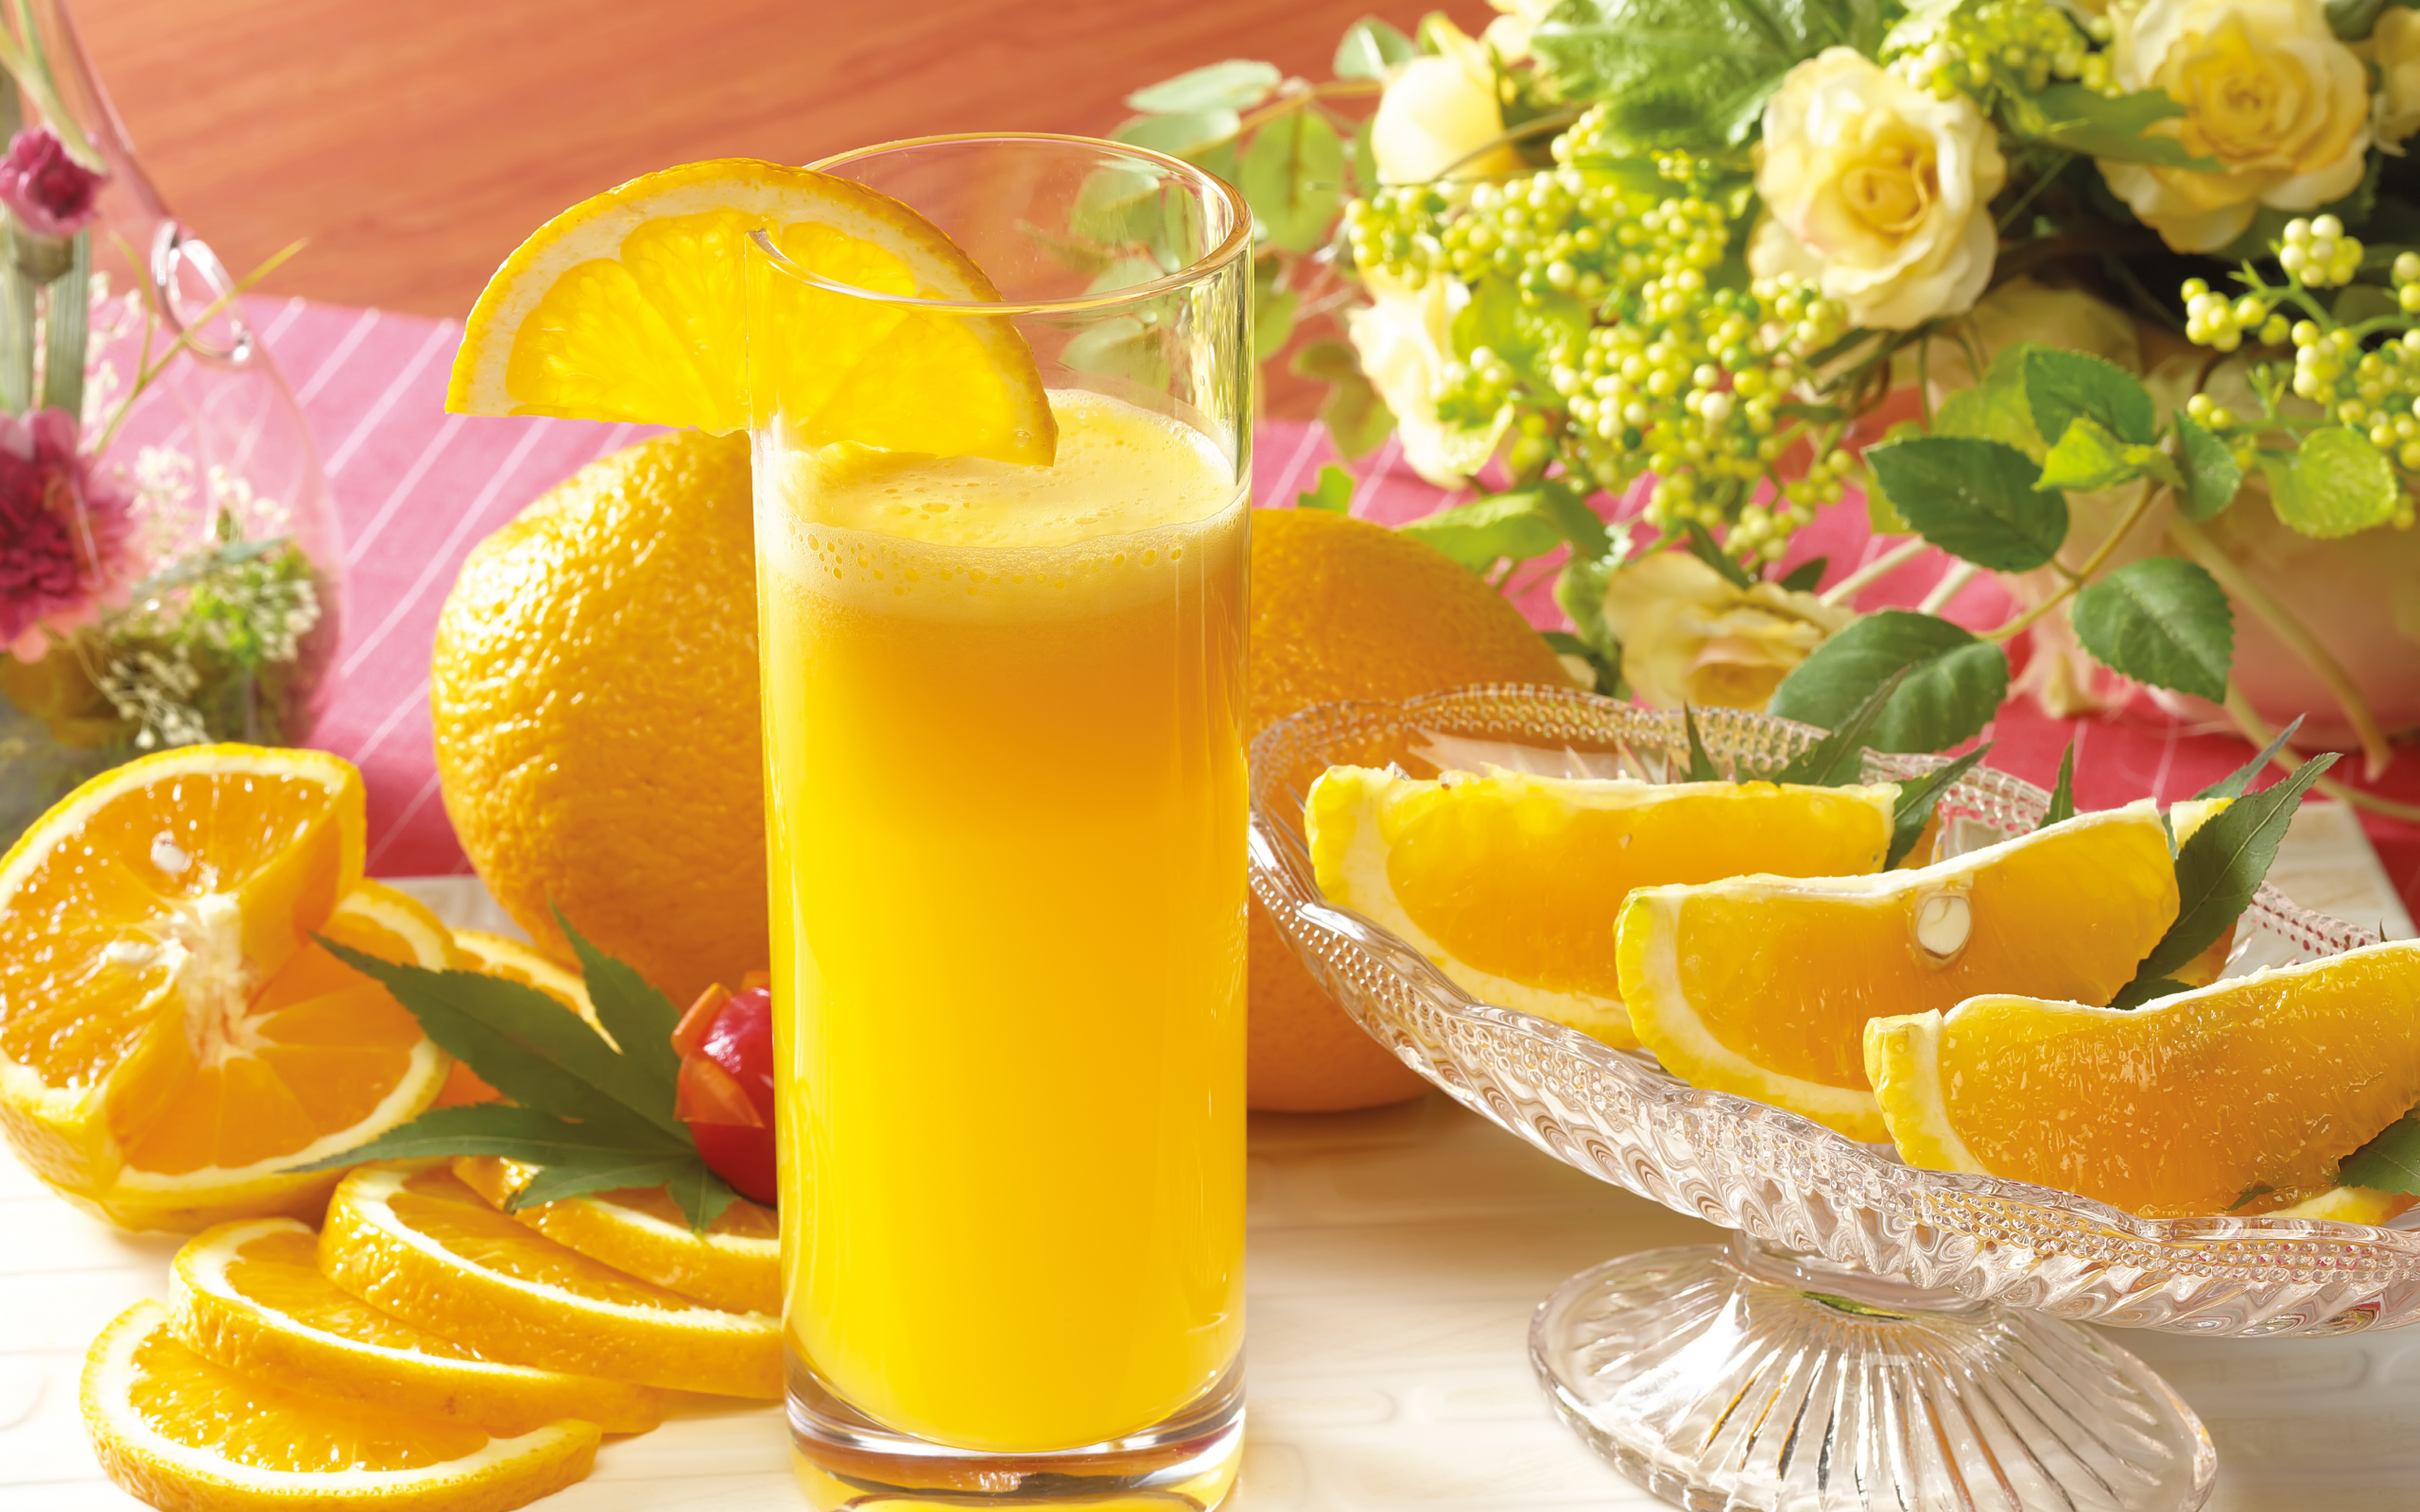 стакан, цветы, апельсины, сок